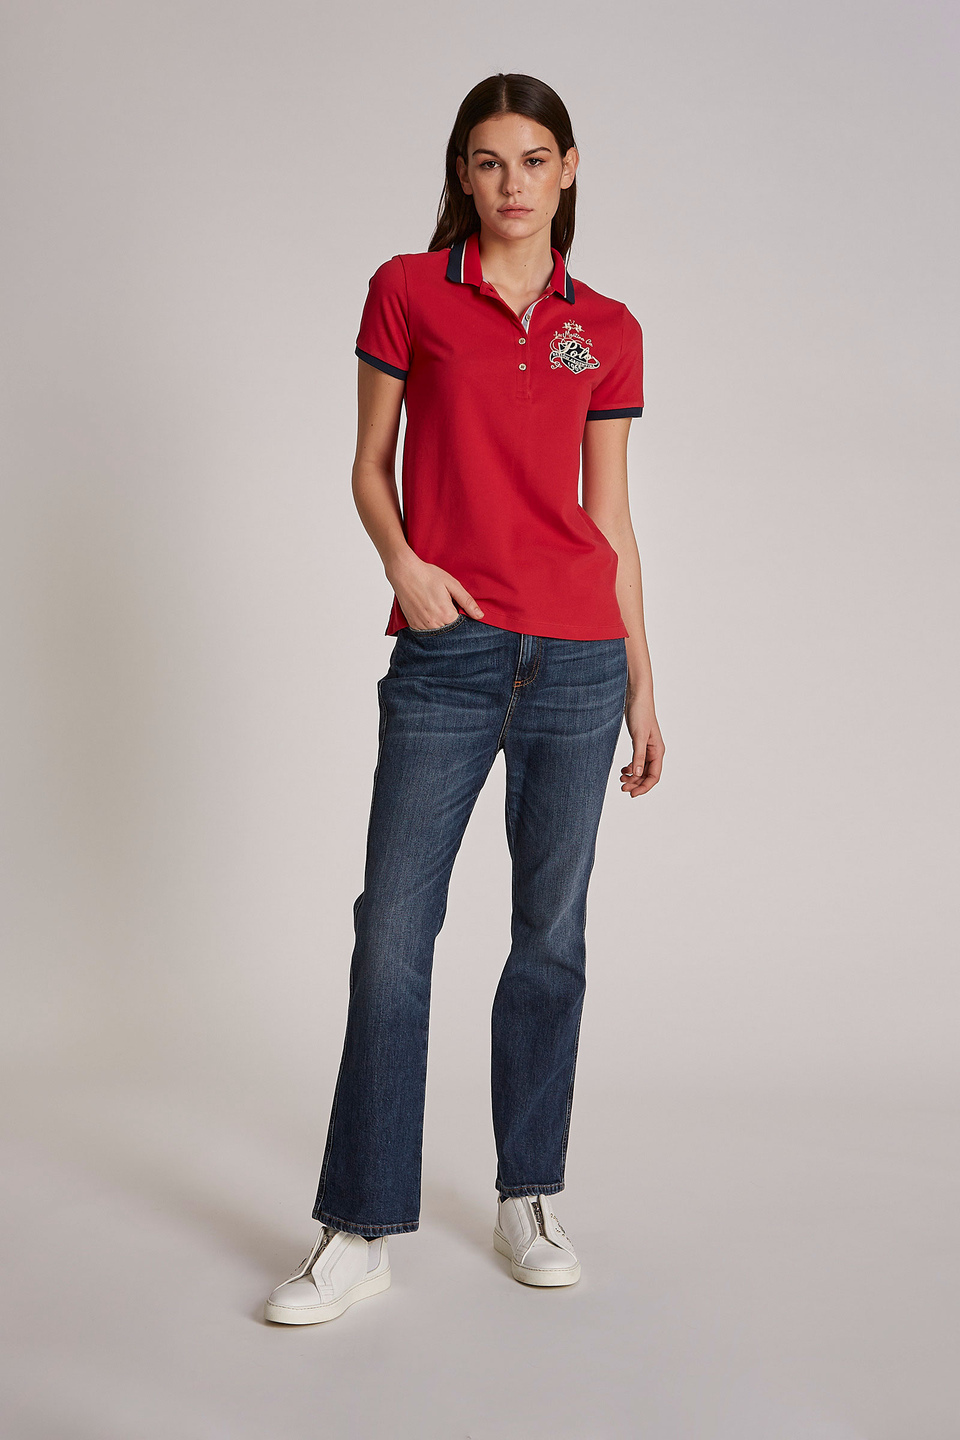 Polo femme 100% coton à manches courtes et coupe classique - La Martina - Official Online Shop